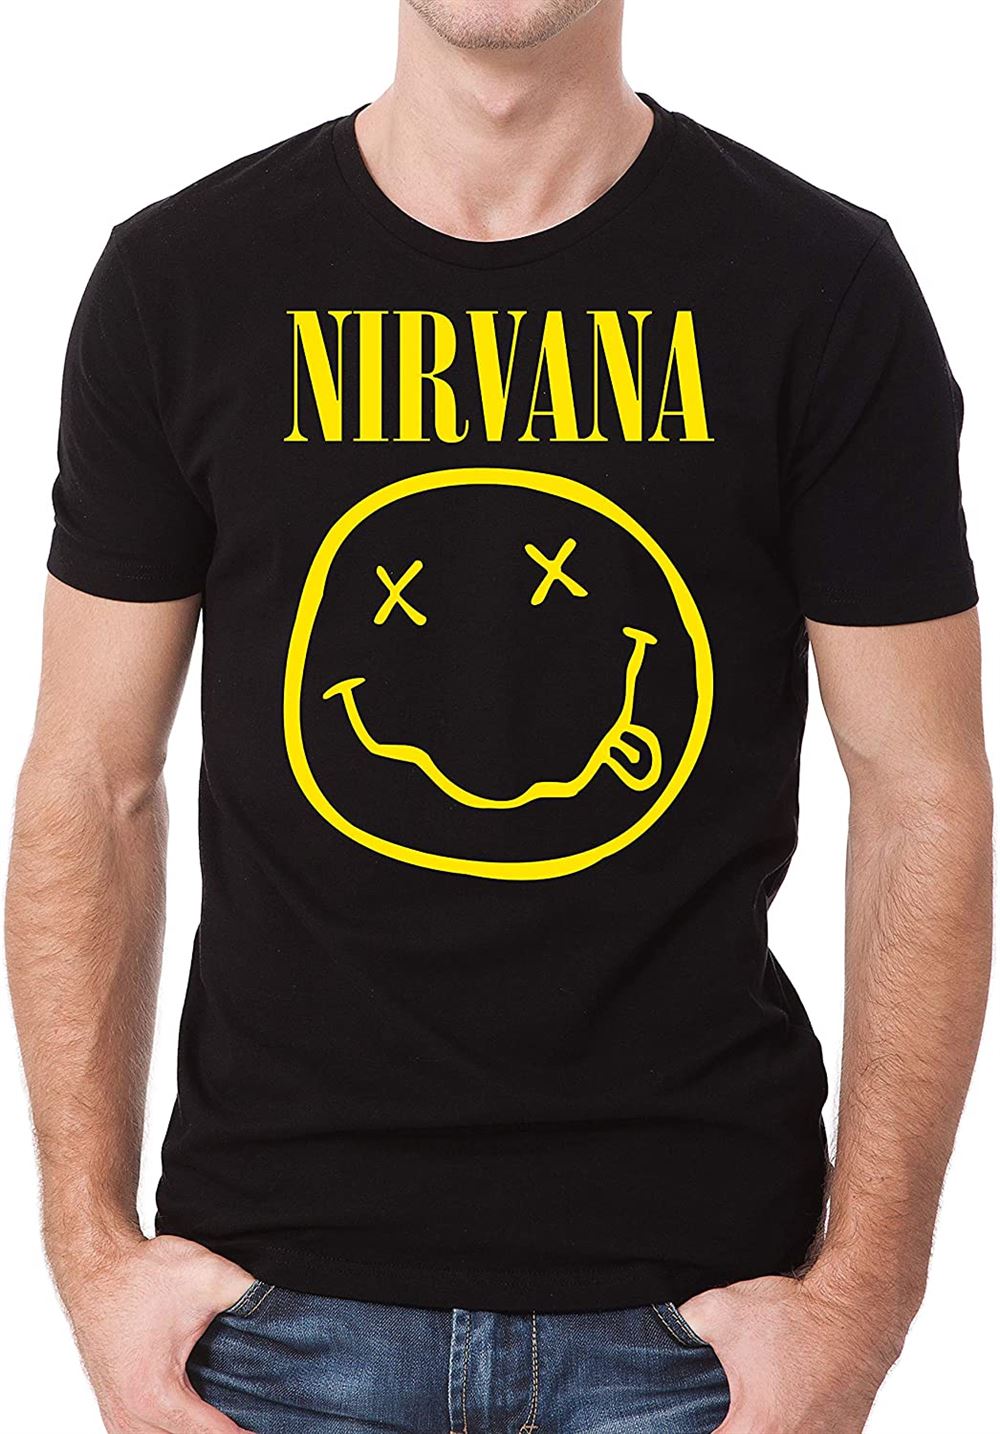 nirvana t shirt man